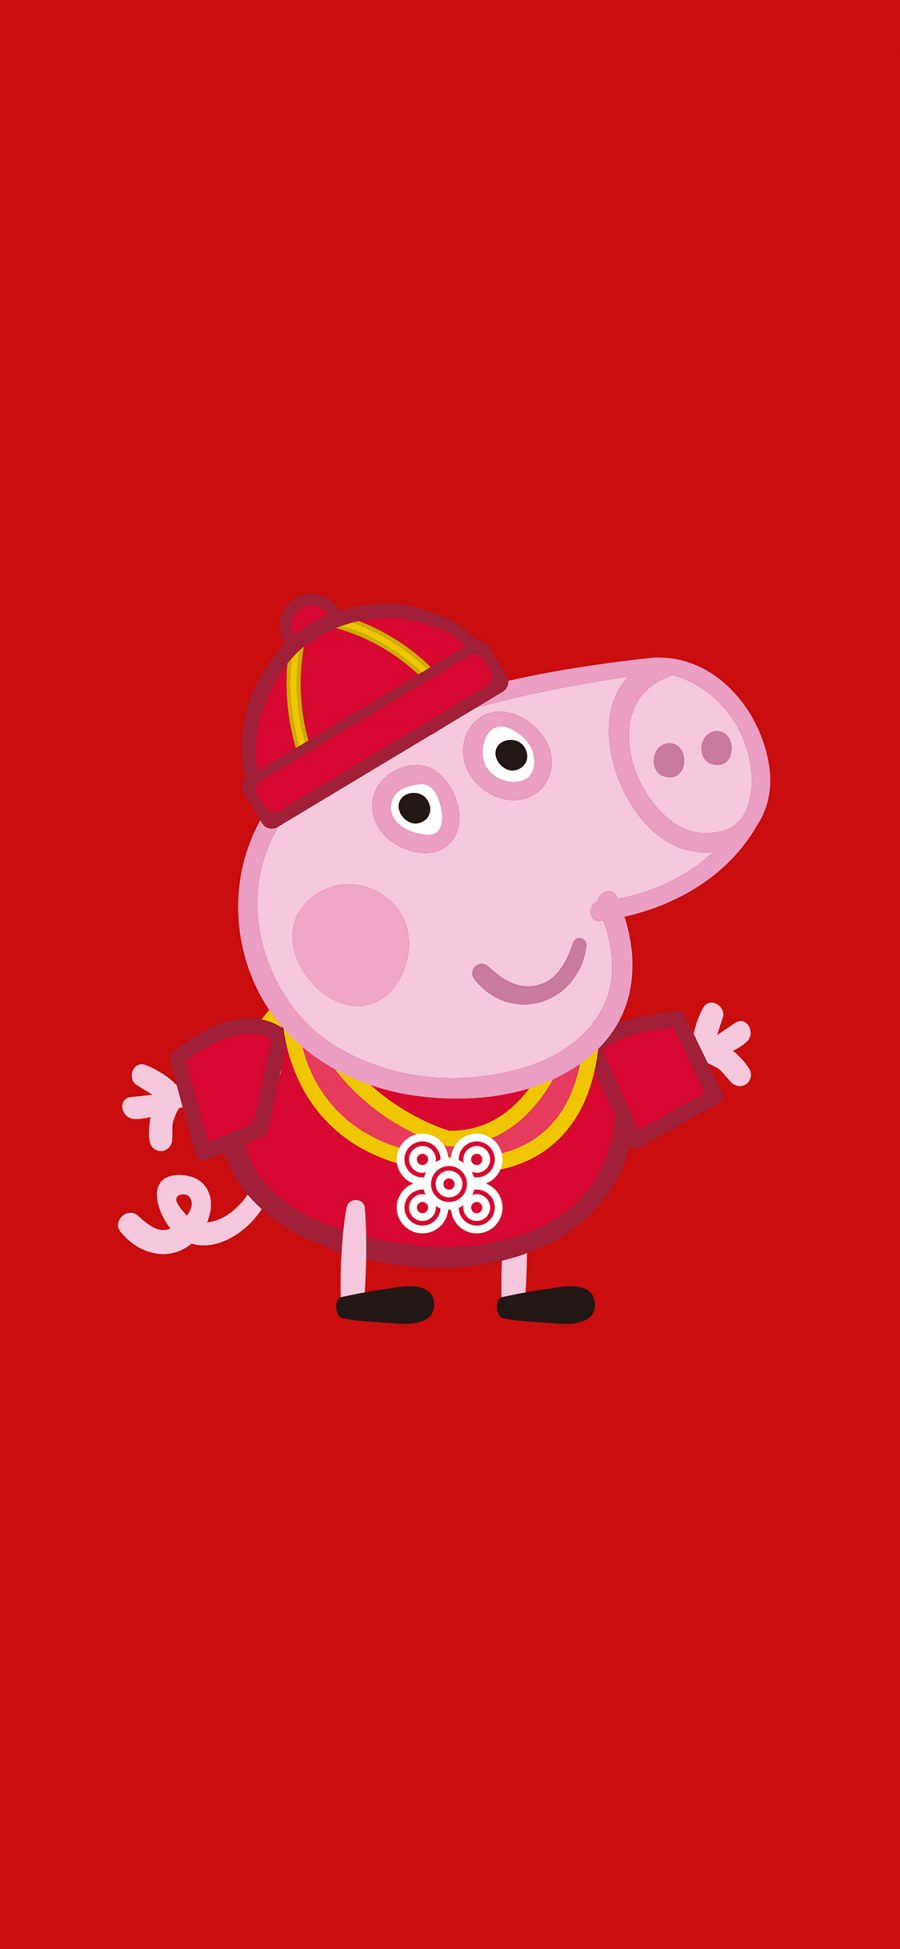 [2436×1125]小猪佩奇 乔治 红色 动画 苹果手机动漫壁纸图片